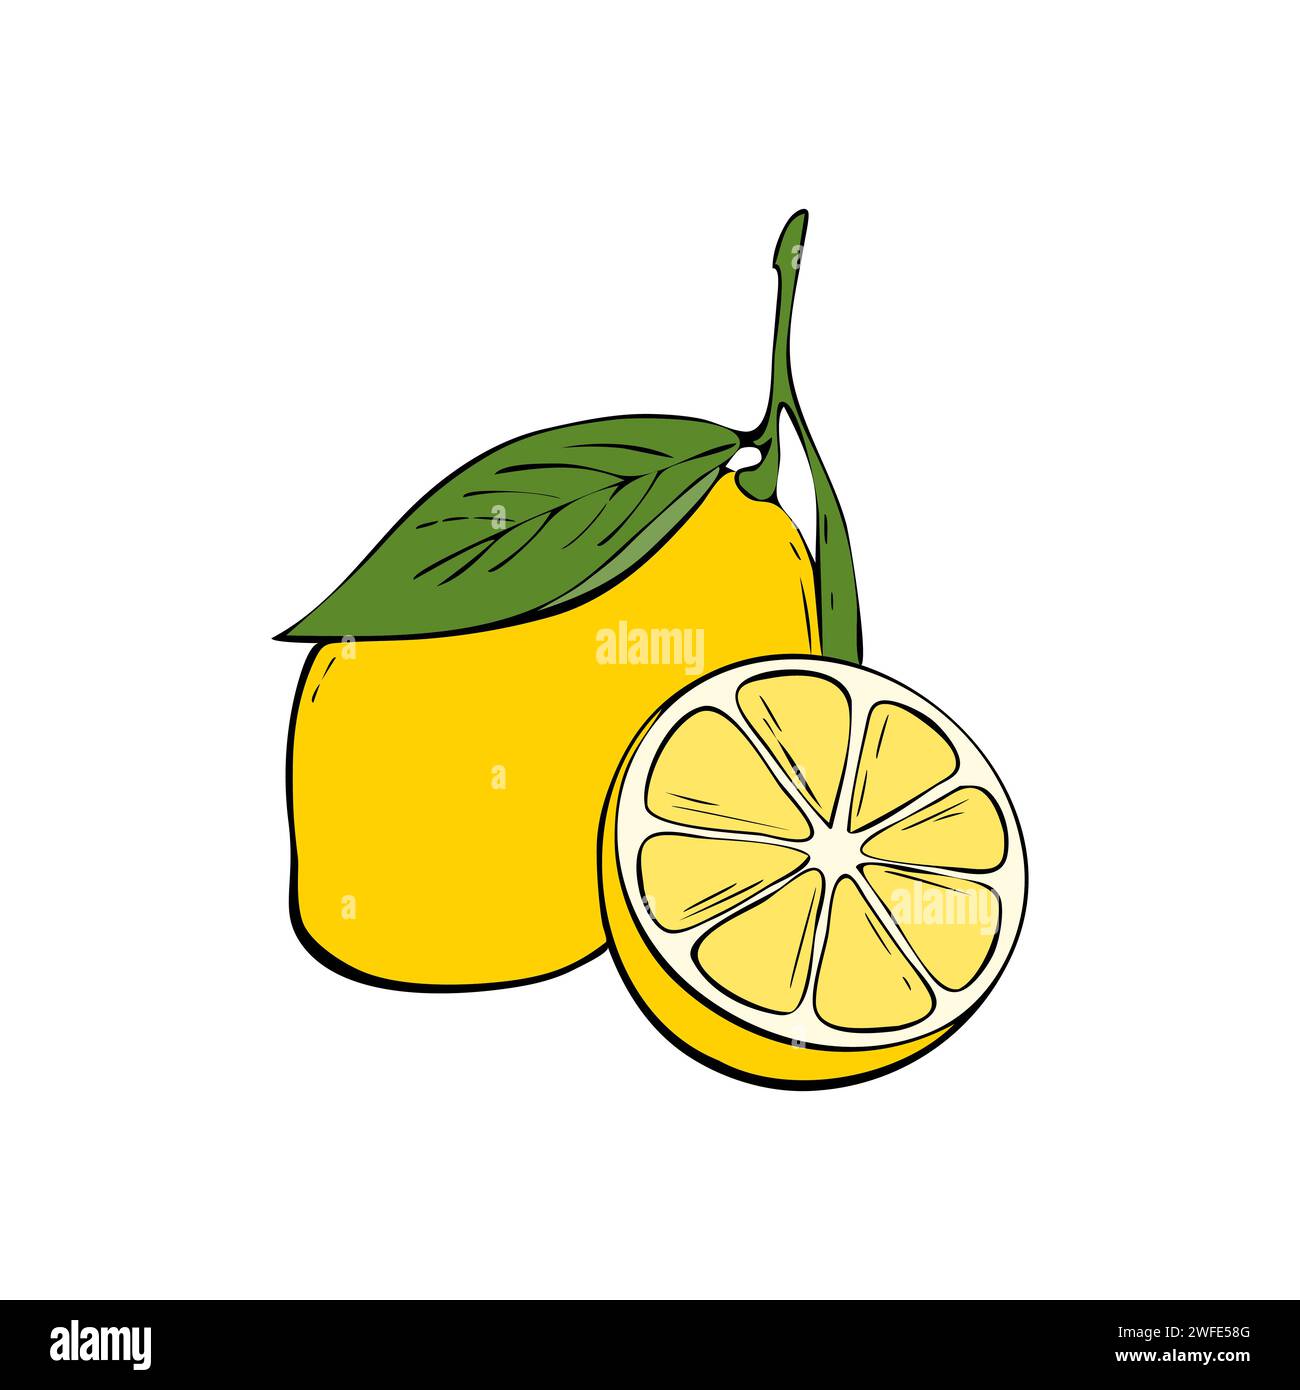 L'illustration représente un citron jaune mûr attaché sur une branche avec une feuille verte. Illustration de Vecteur